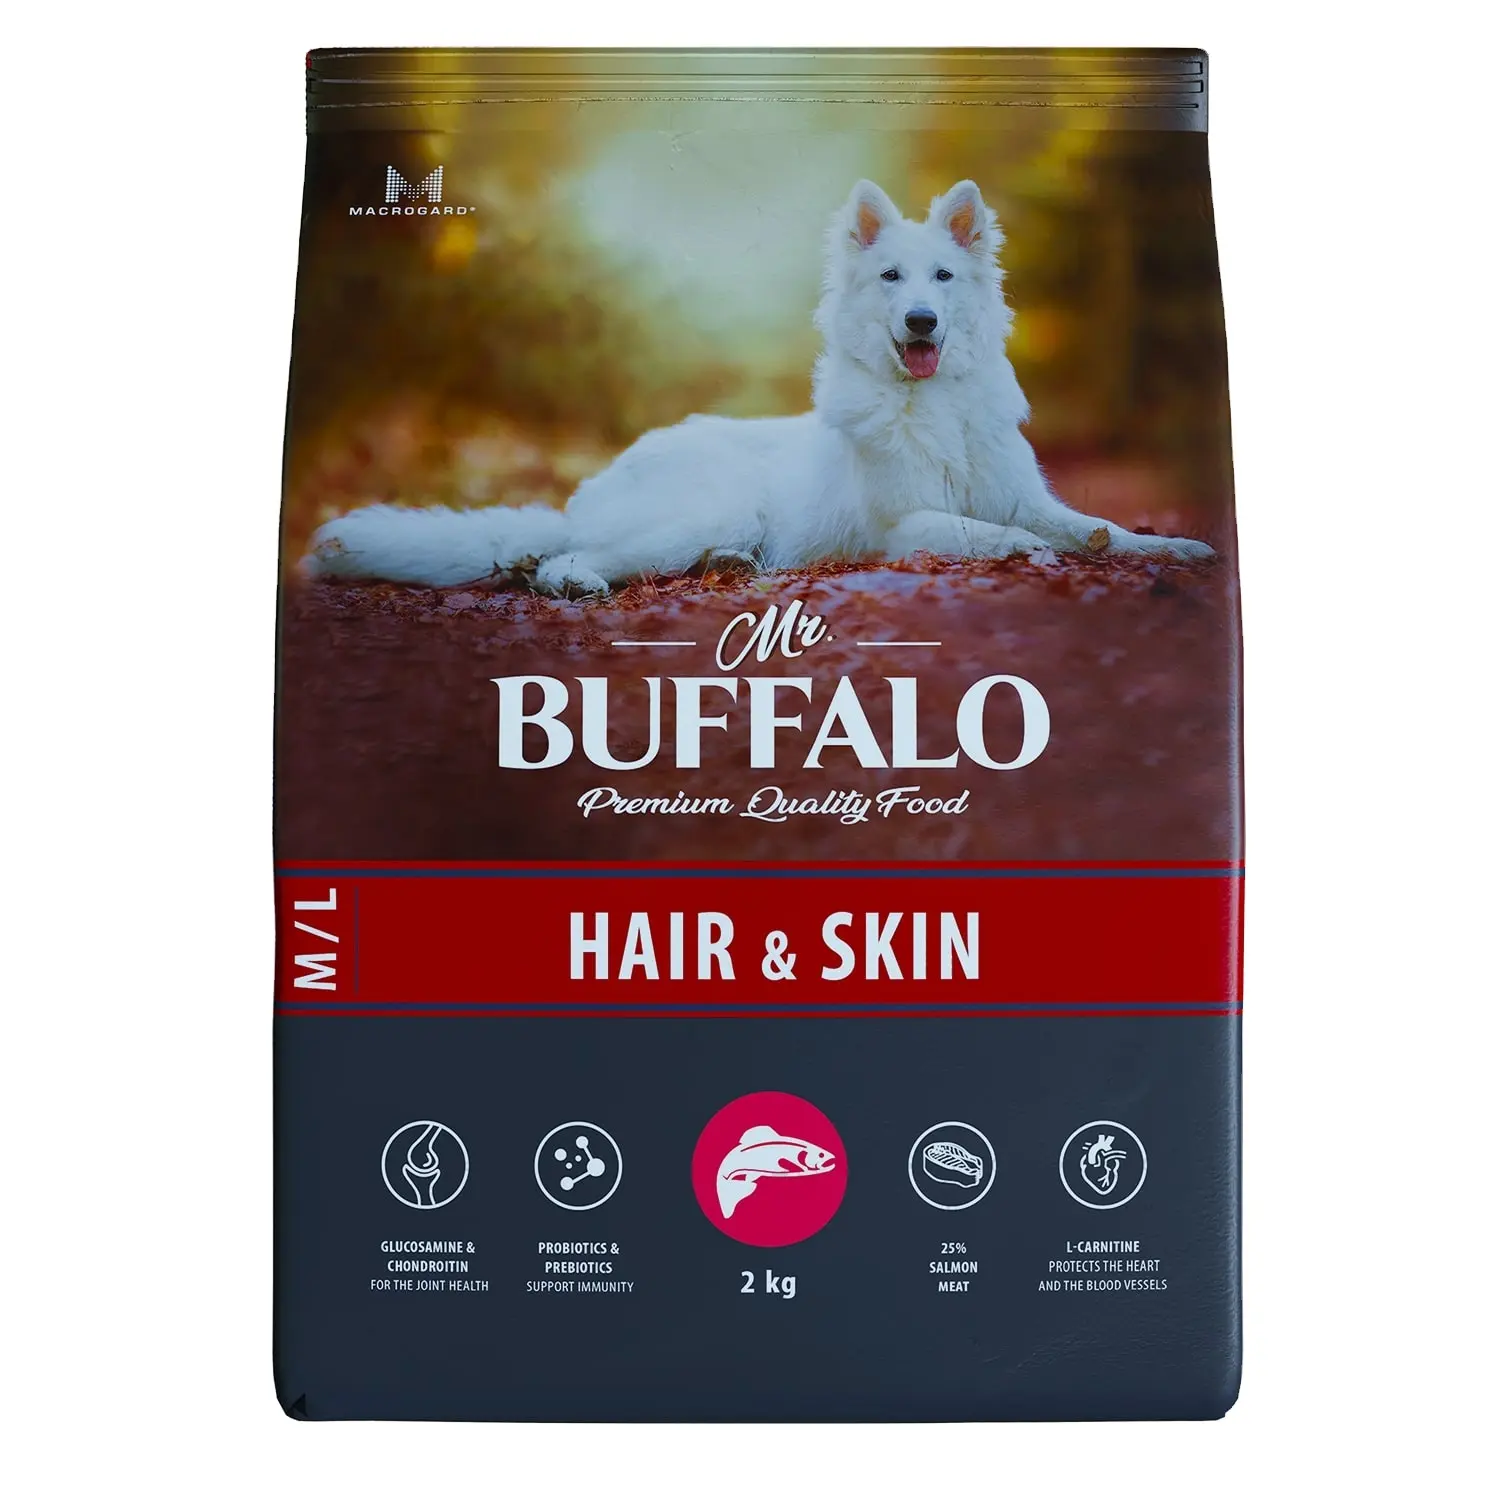 Mr. buffalo comida seca para cães, cuidado com a pele, sabor de salão, 2 kg, qualidade premium, comida seca, saúde e nutrição de animais de estimação